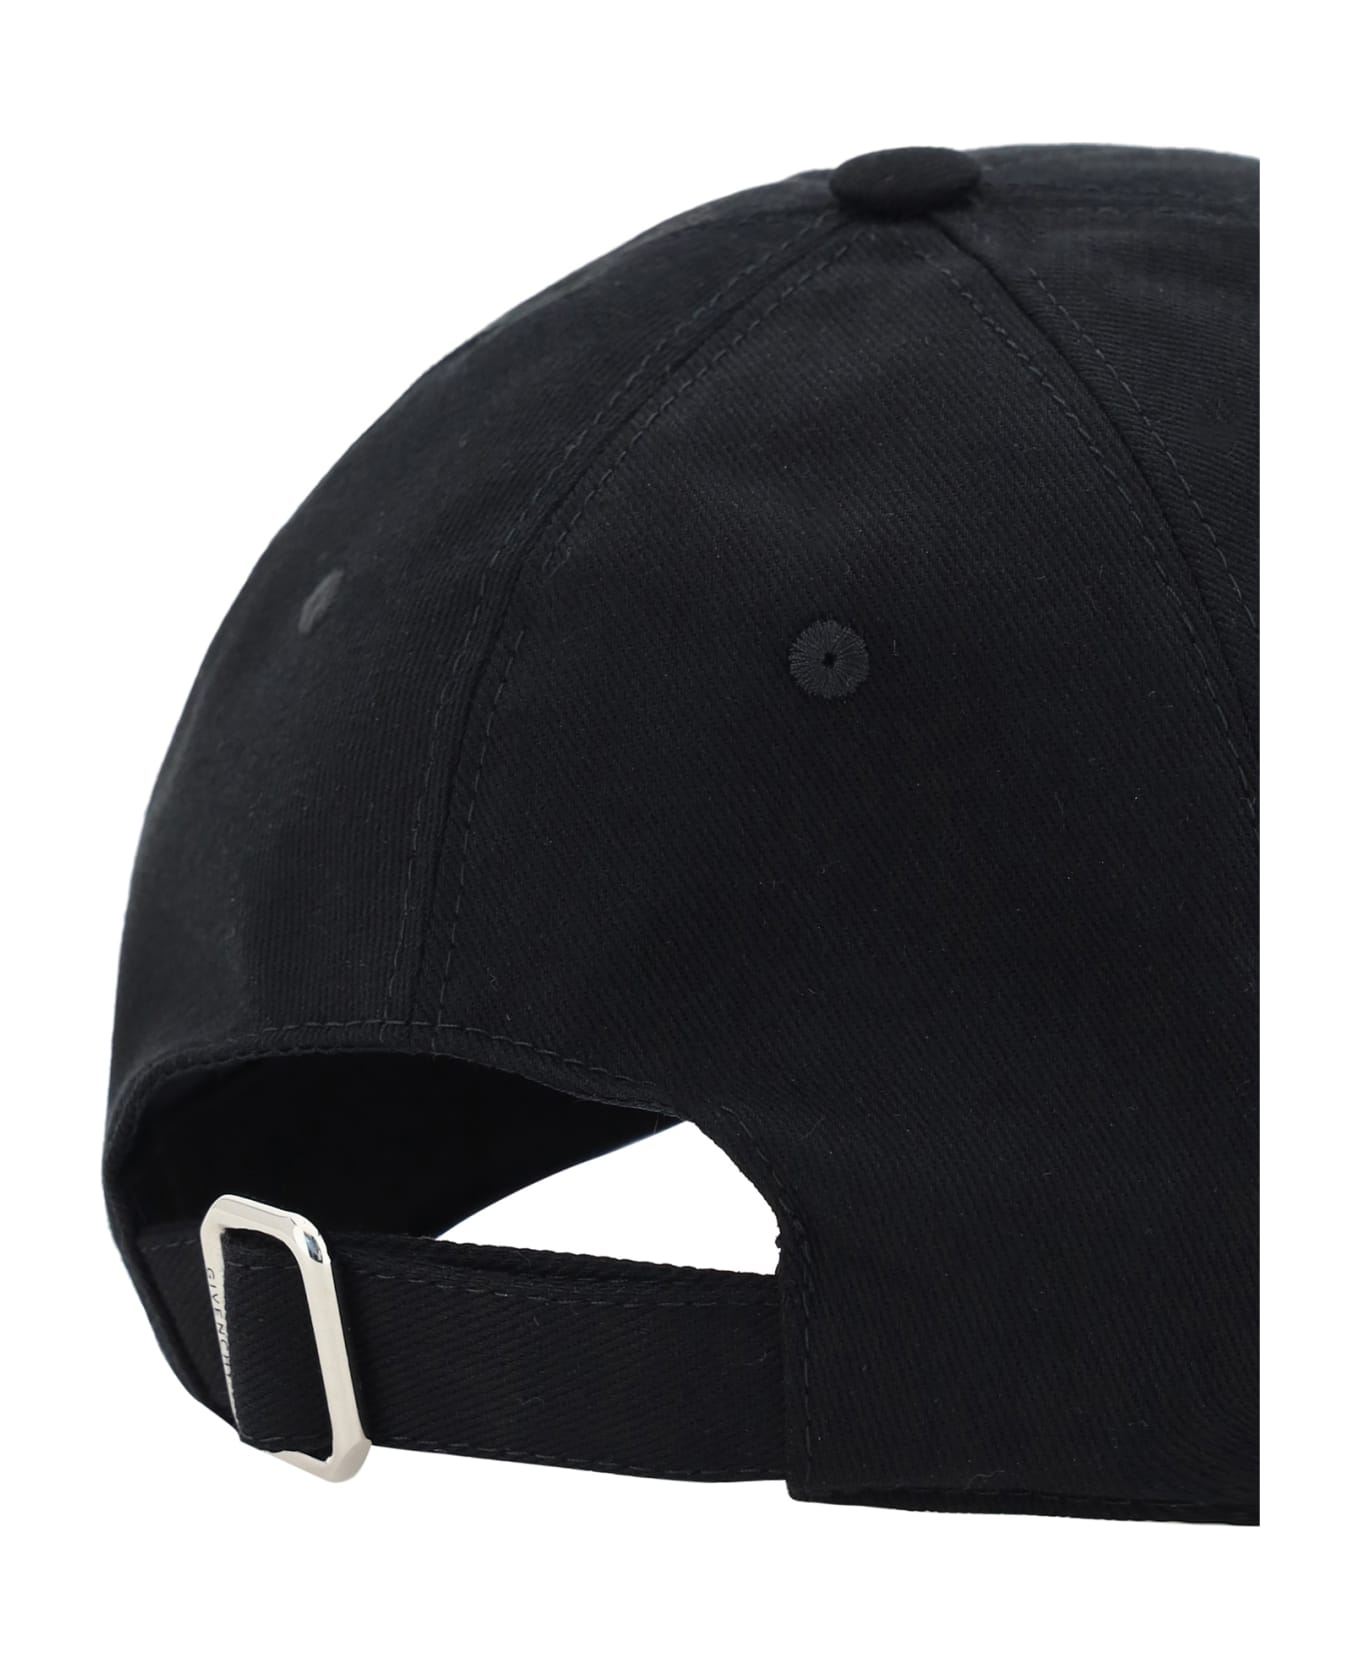 Givenchy Baseball Cap - Black 帽子